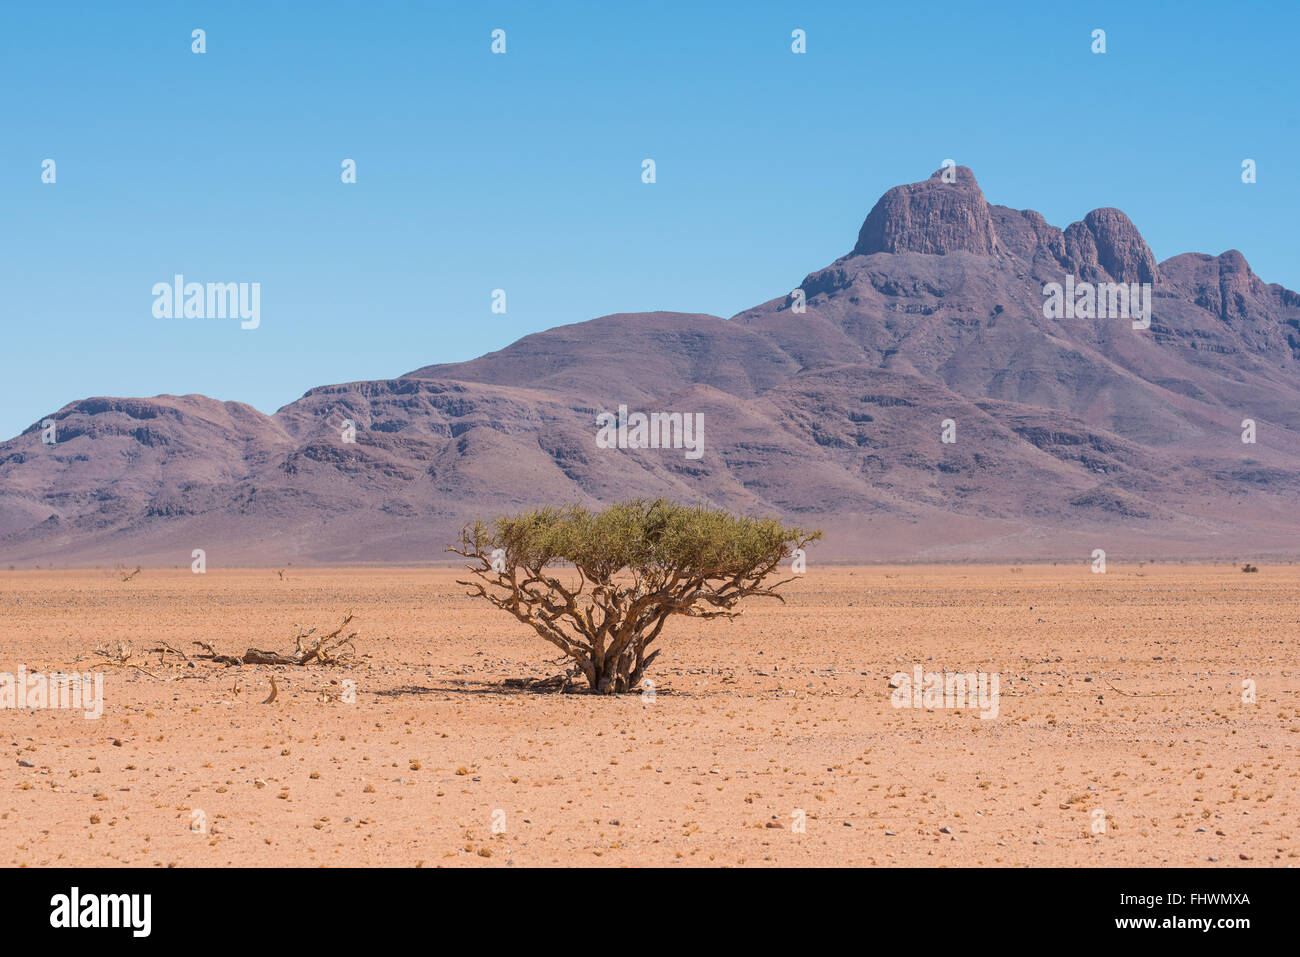 Malerische Landschaft von einem Schäferhund-Baum in der Namib-Wüste mit majestätischen Bergen im Hintergrund Stockfoto